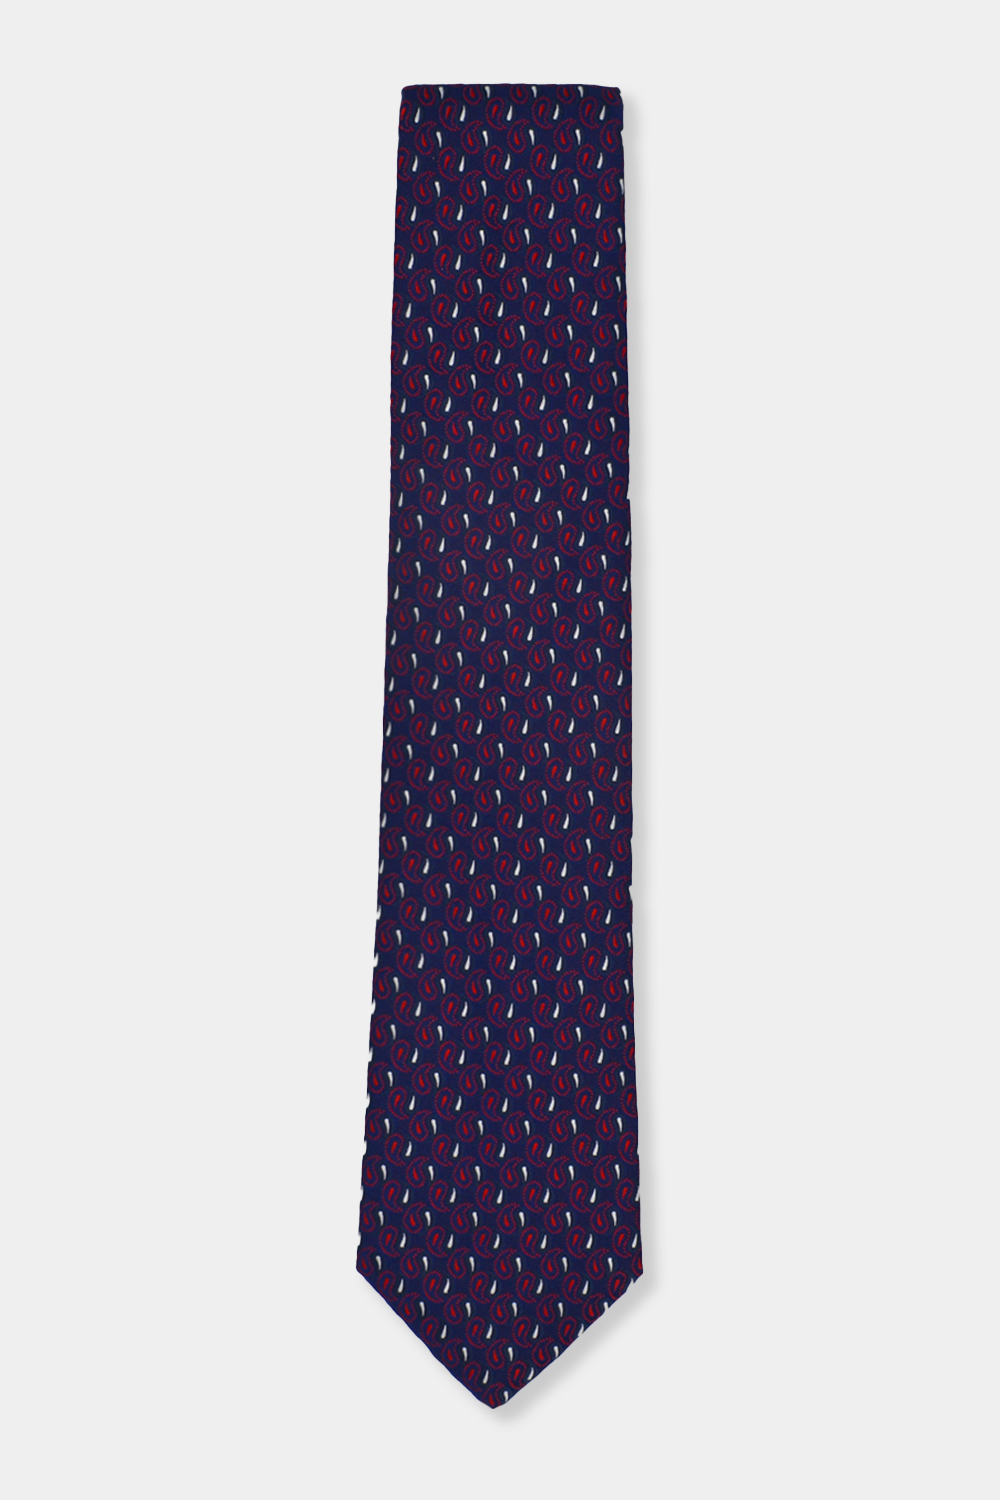 Jacquard Tie 7.5 cm Dark Blue - TIE HOUSE